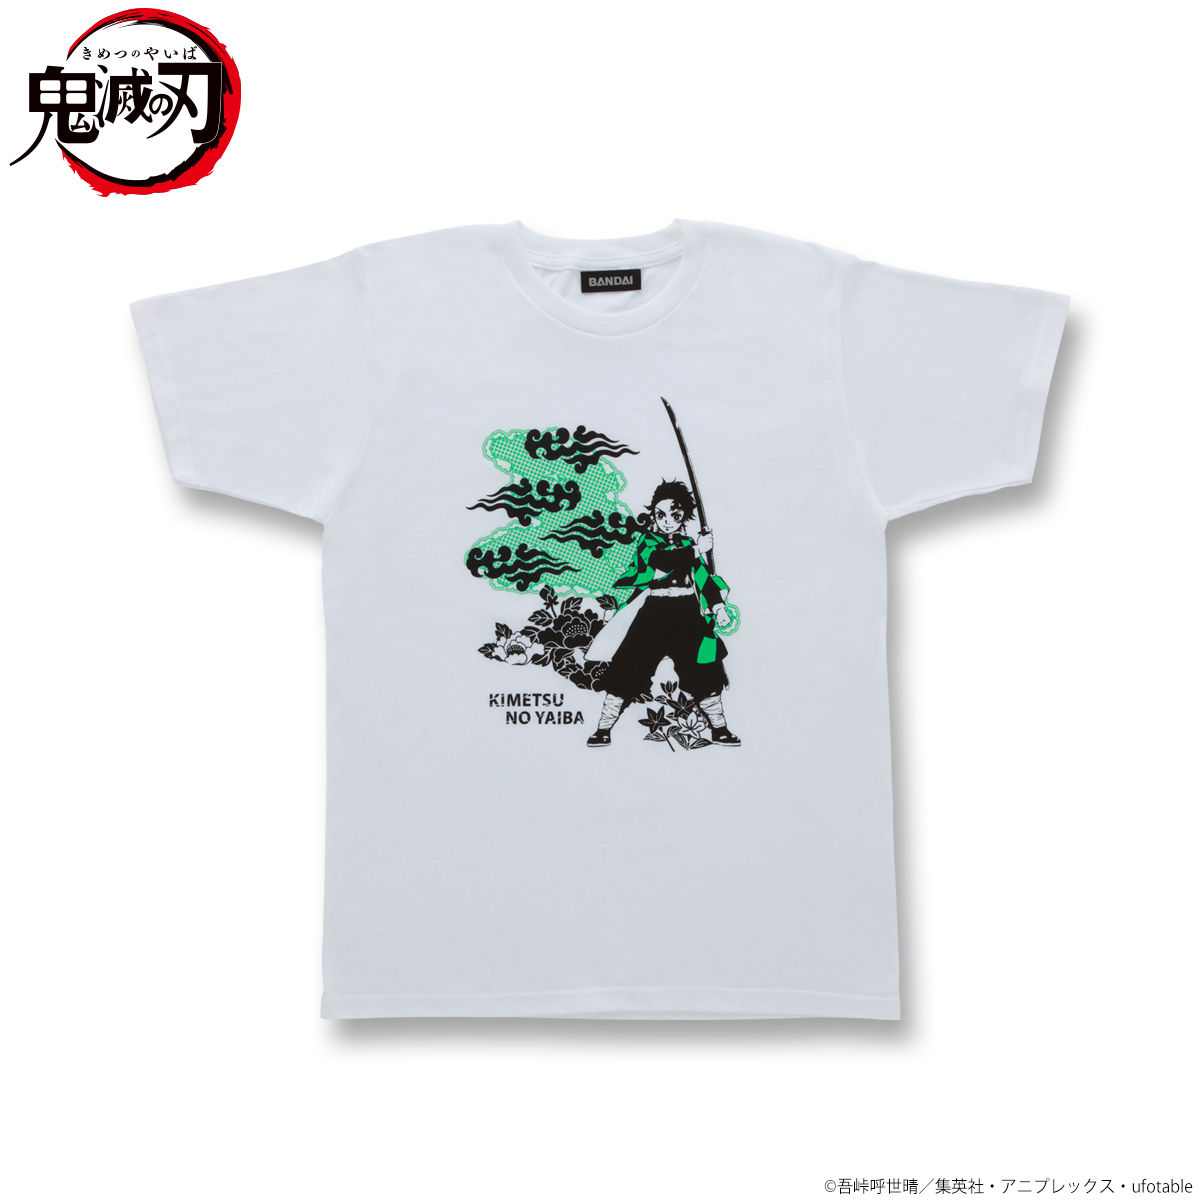 Demon Slayer: Kimetsu no Yaiba T-shirt